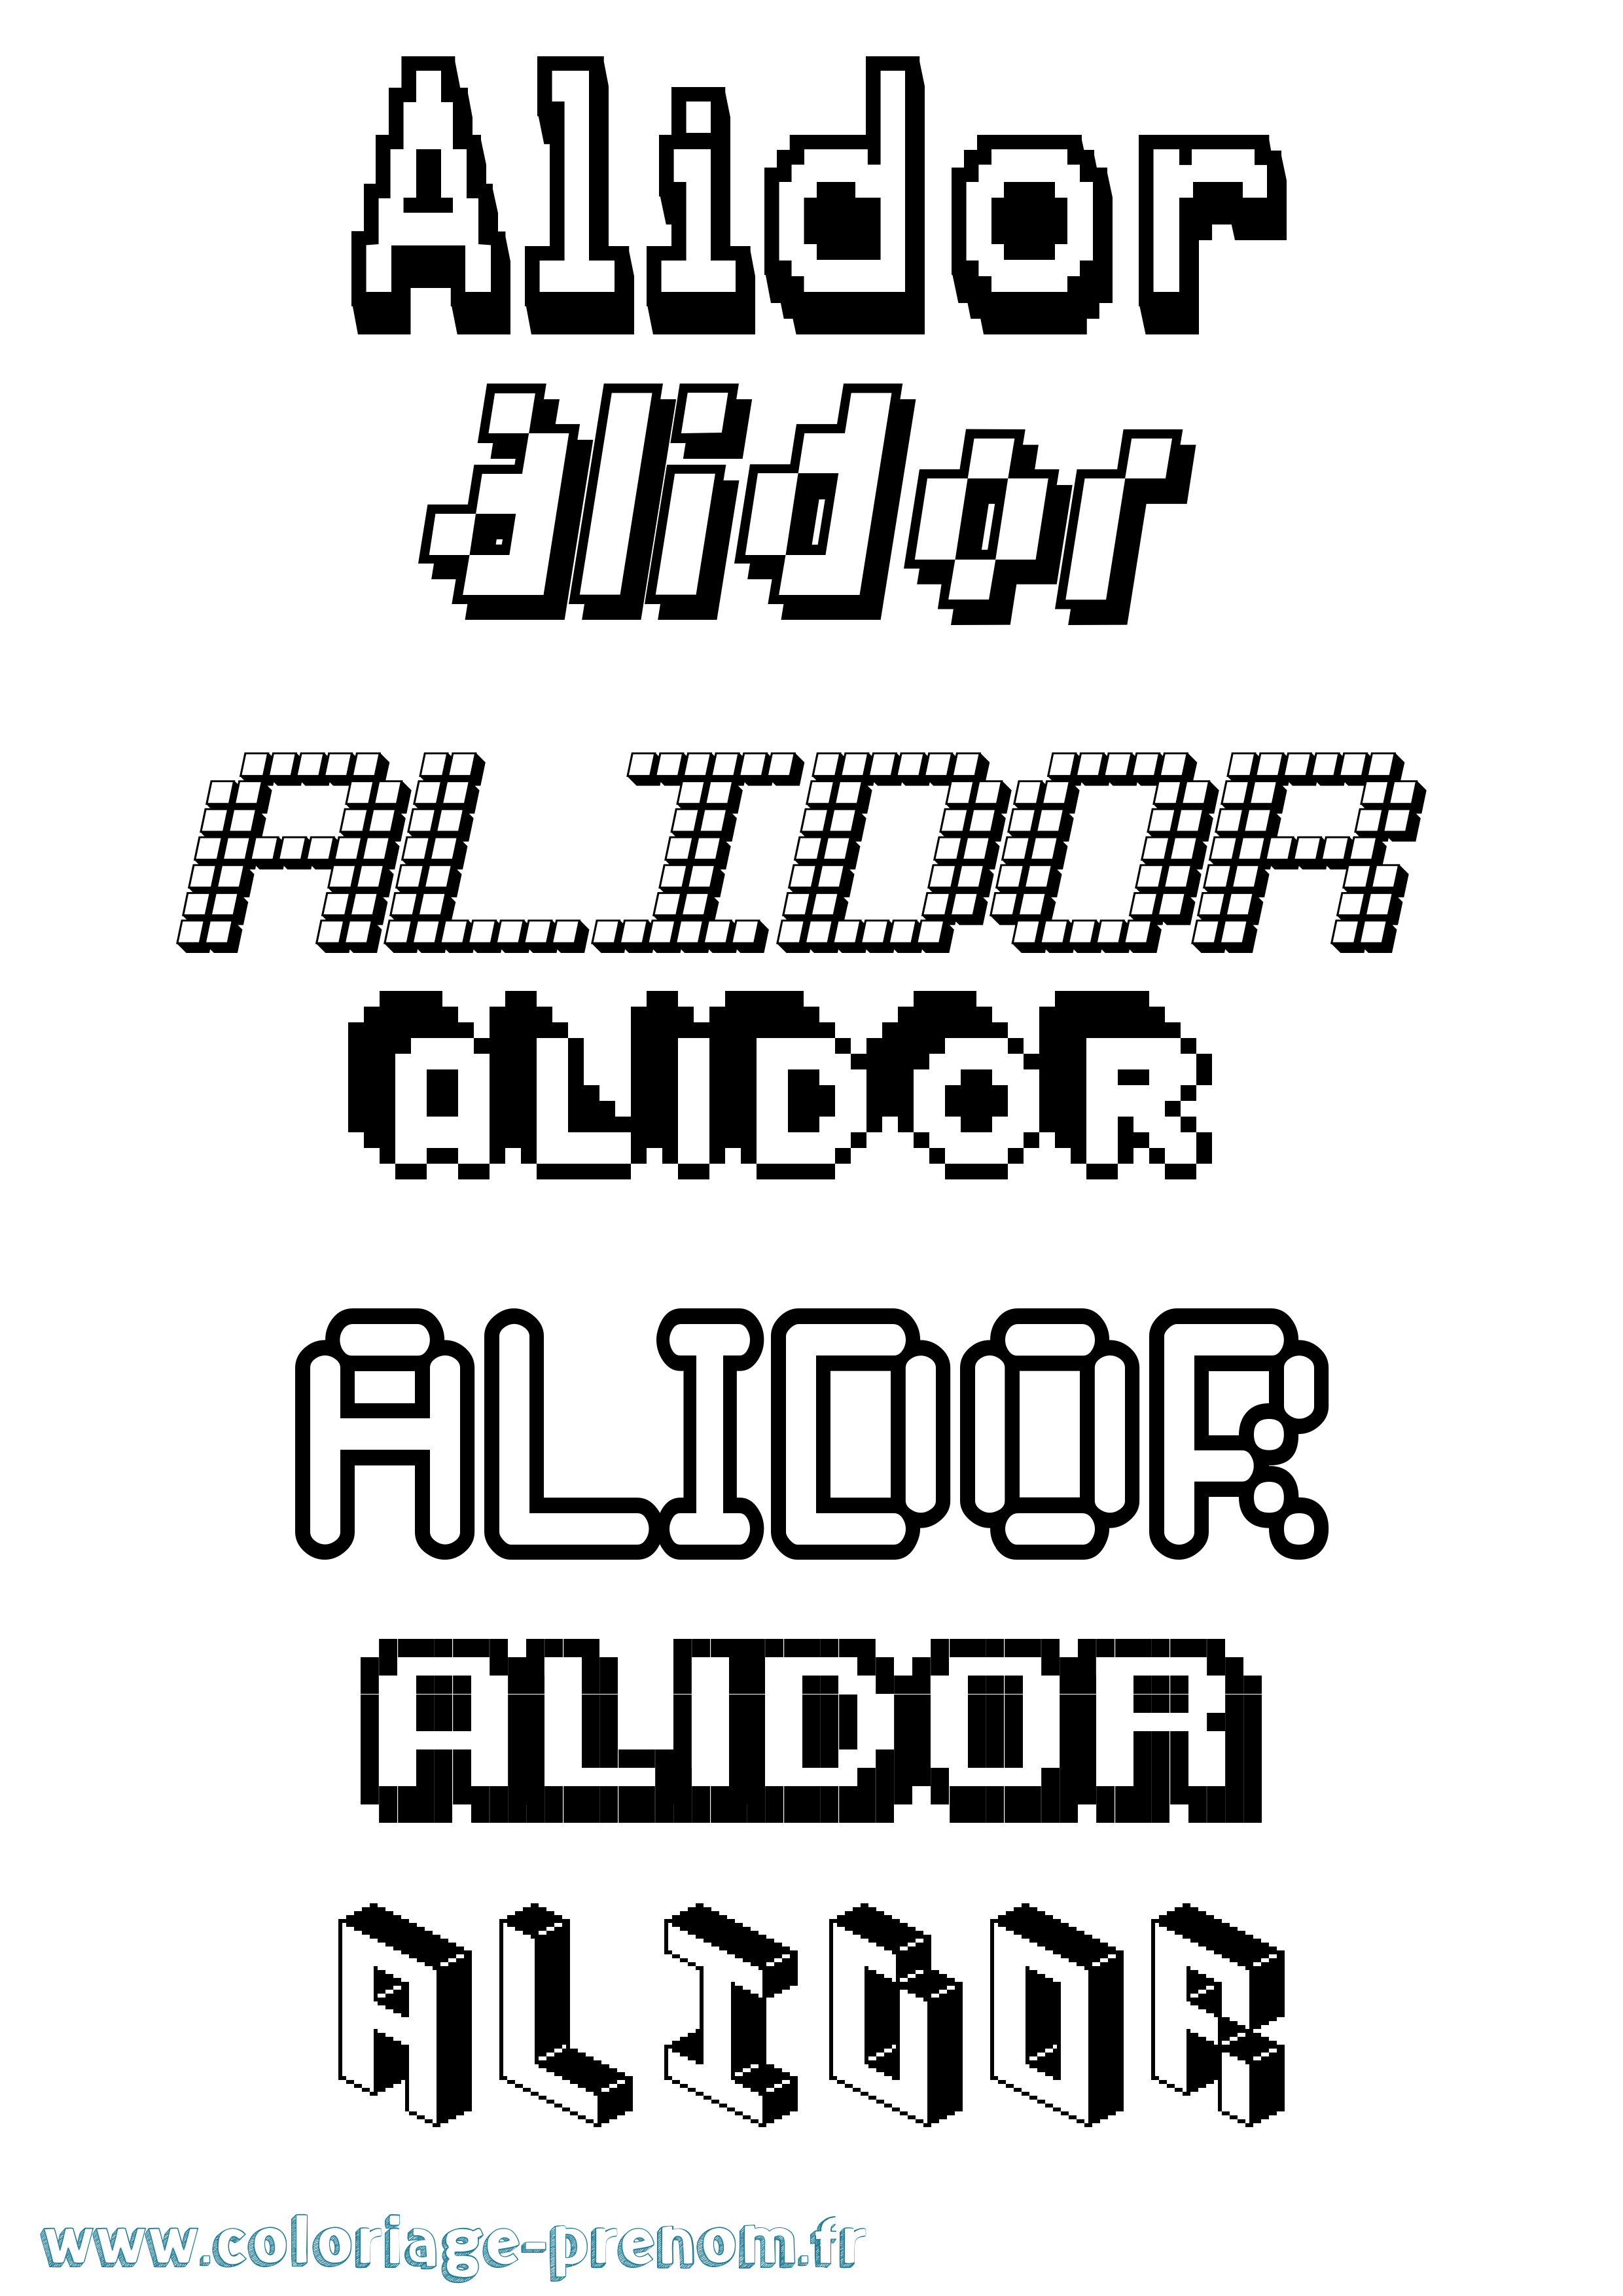 Coloriage prénom Alidor Pixel